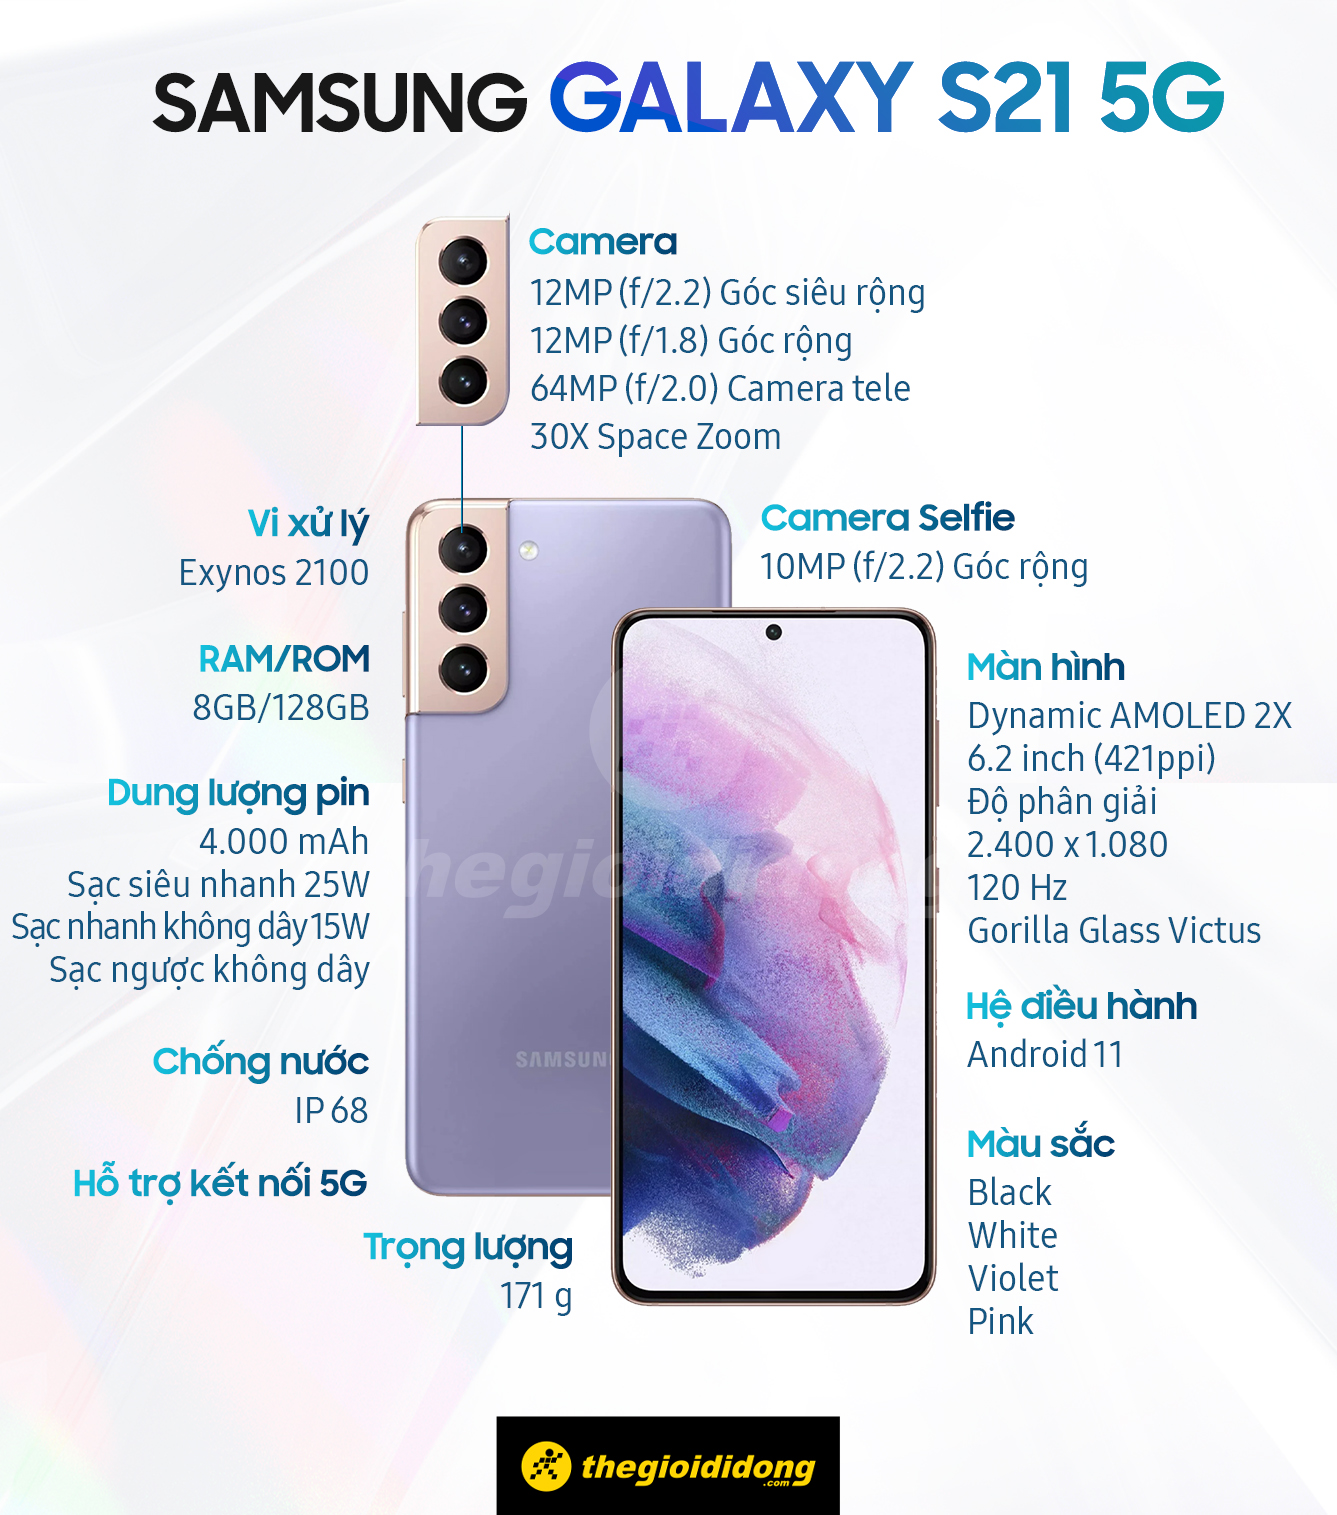 Tóm tắt cấu hình của Galaxy S21 5G